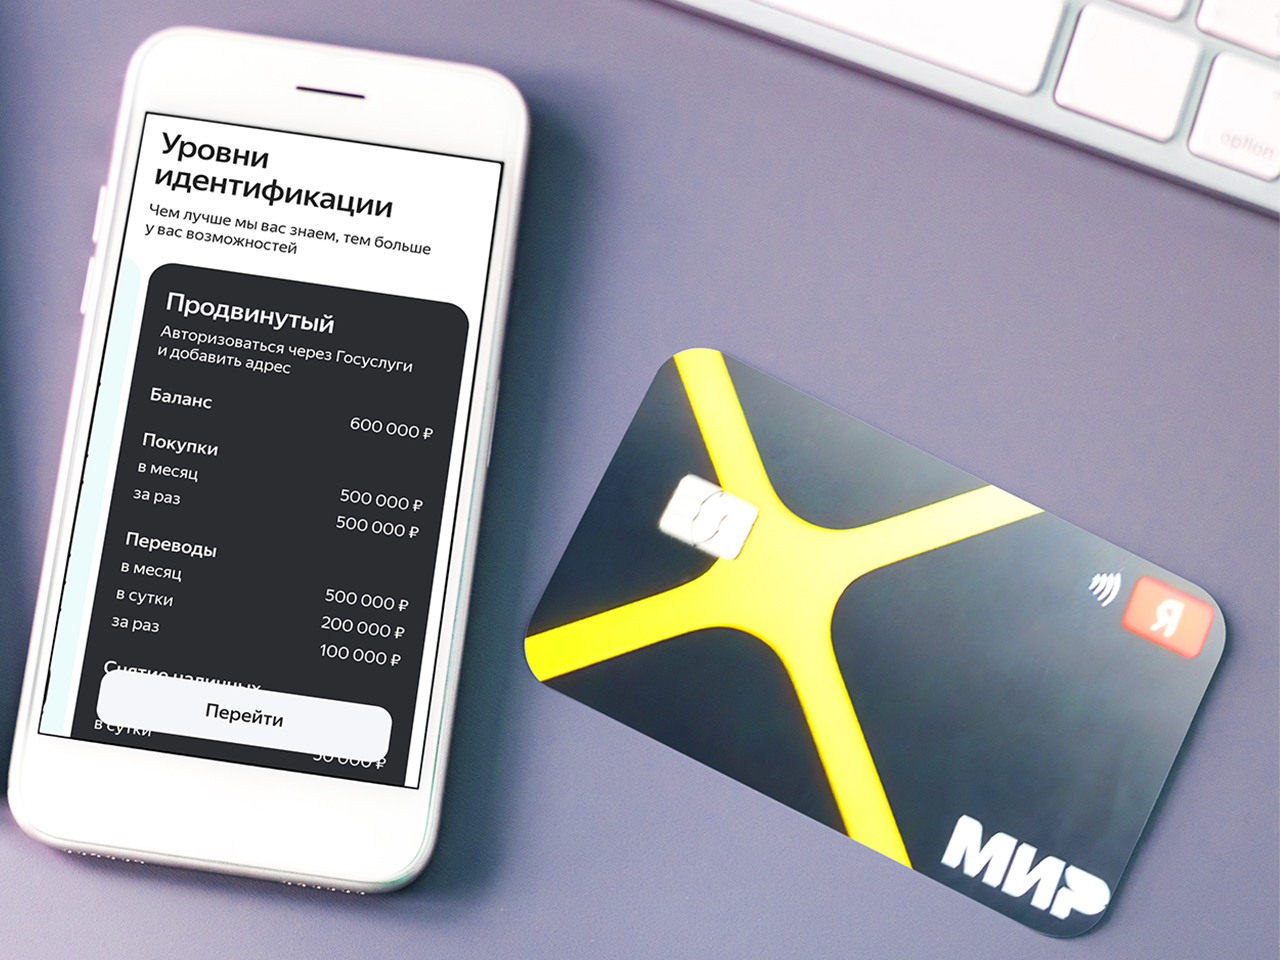 Яндекс-банк добавил «Продвинутый» уровень своим картам